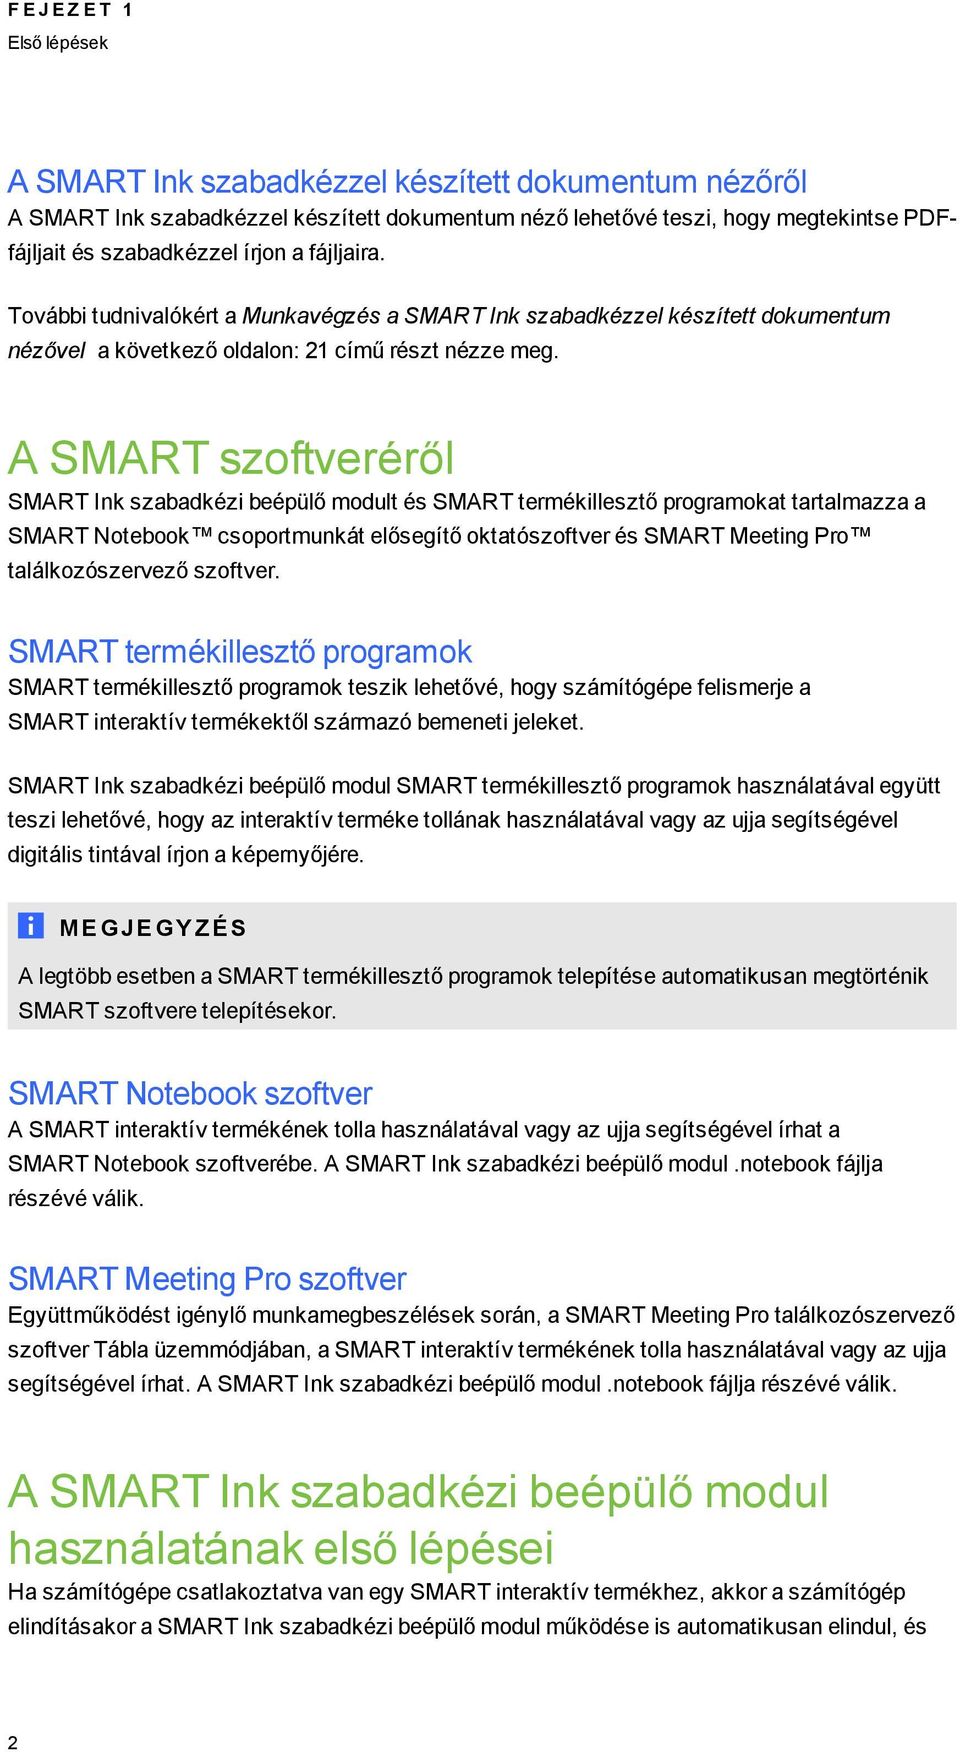 A SMART szoftveréről SMART Ink szabadkézi beépülő modult és SMART termékillesztő proramokat tartalmazza a SMART Notebook csoportmunkát előseítő oktatószoftver és SMART Meetin Pro találkozószervező